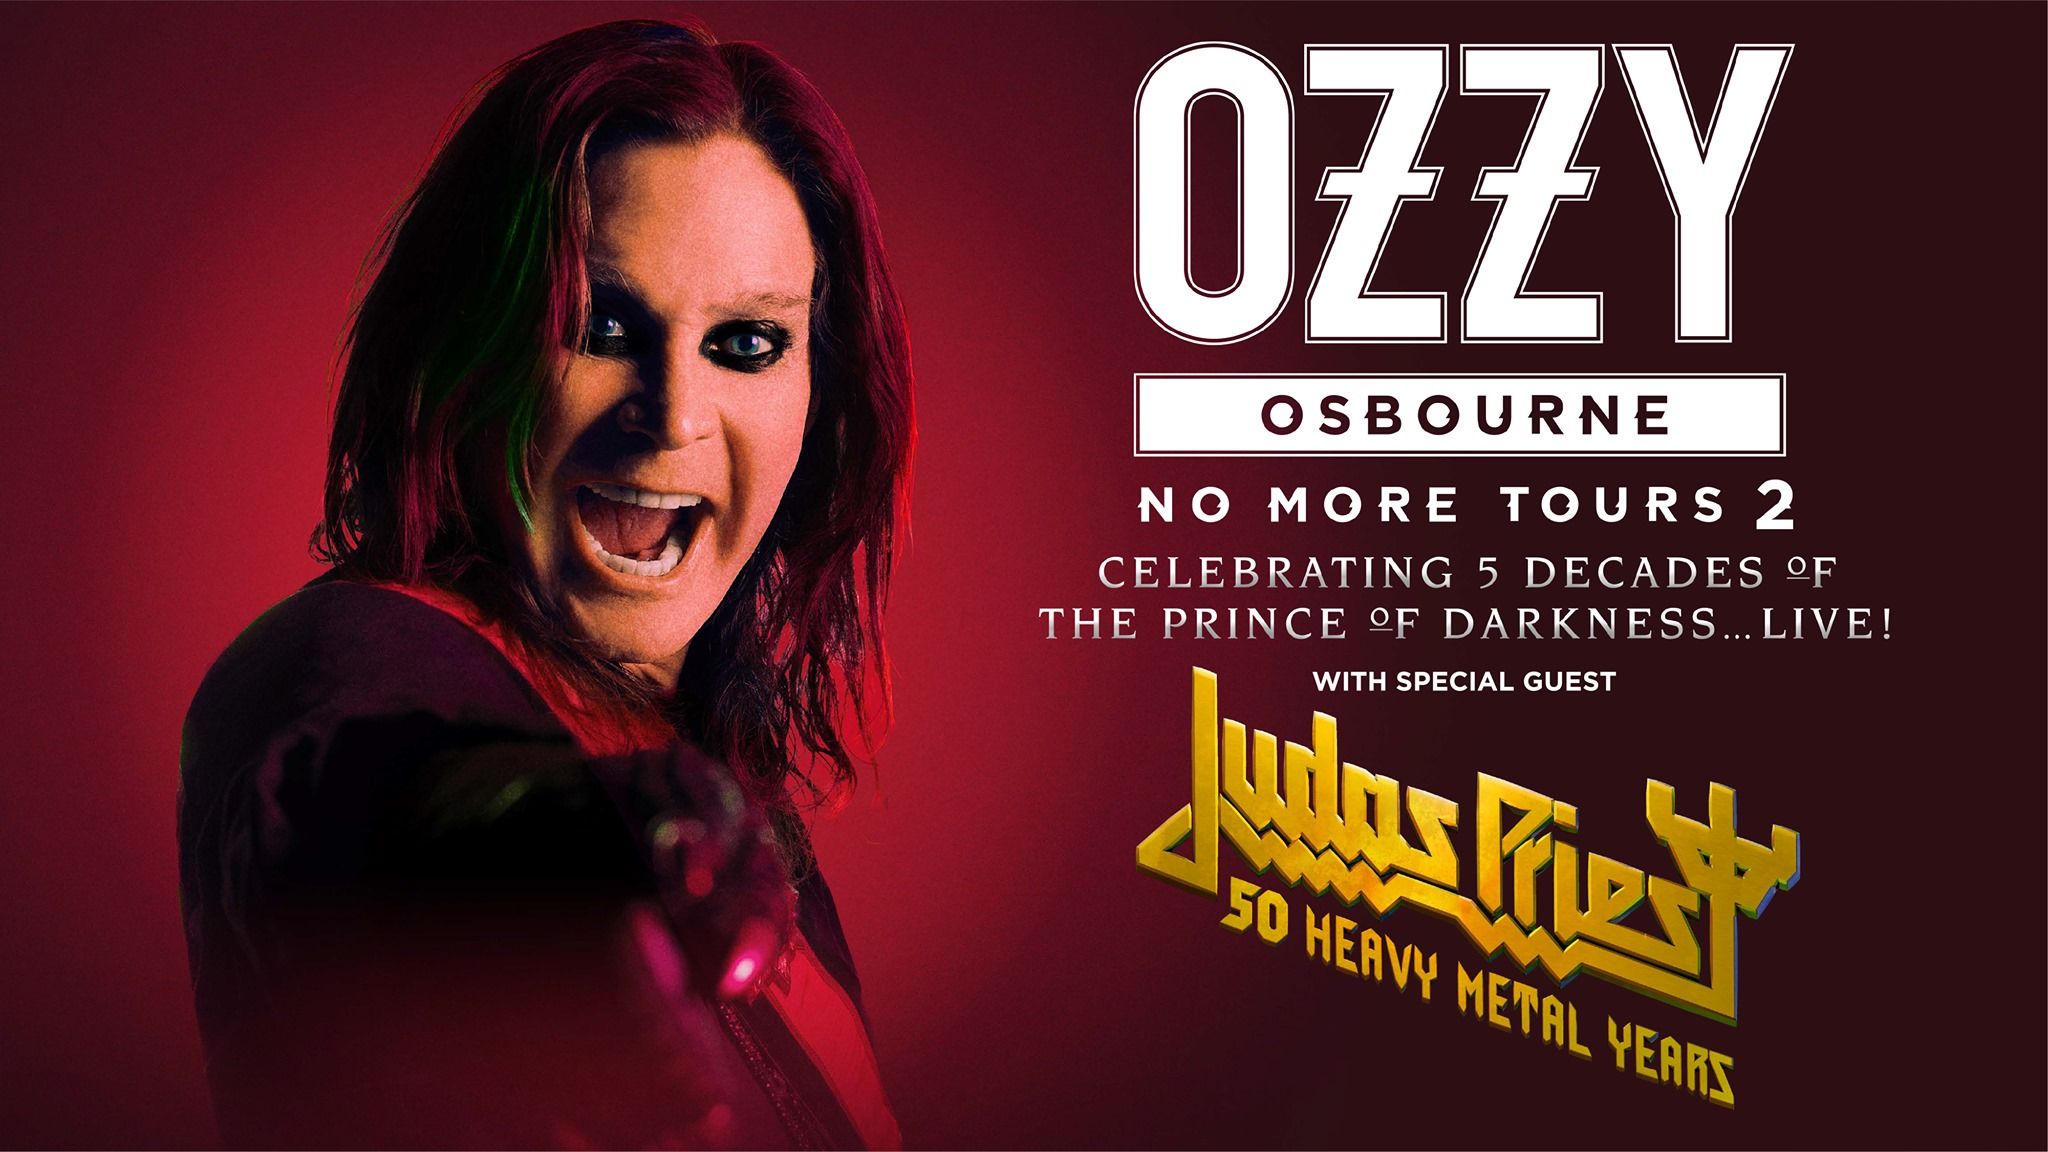 Neue Europatour-Termine mit Judas Priest für Ende 2020 bekanntgegeben